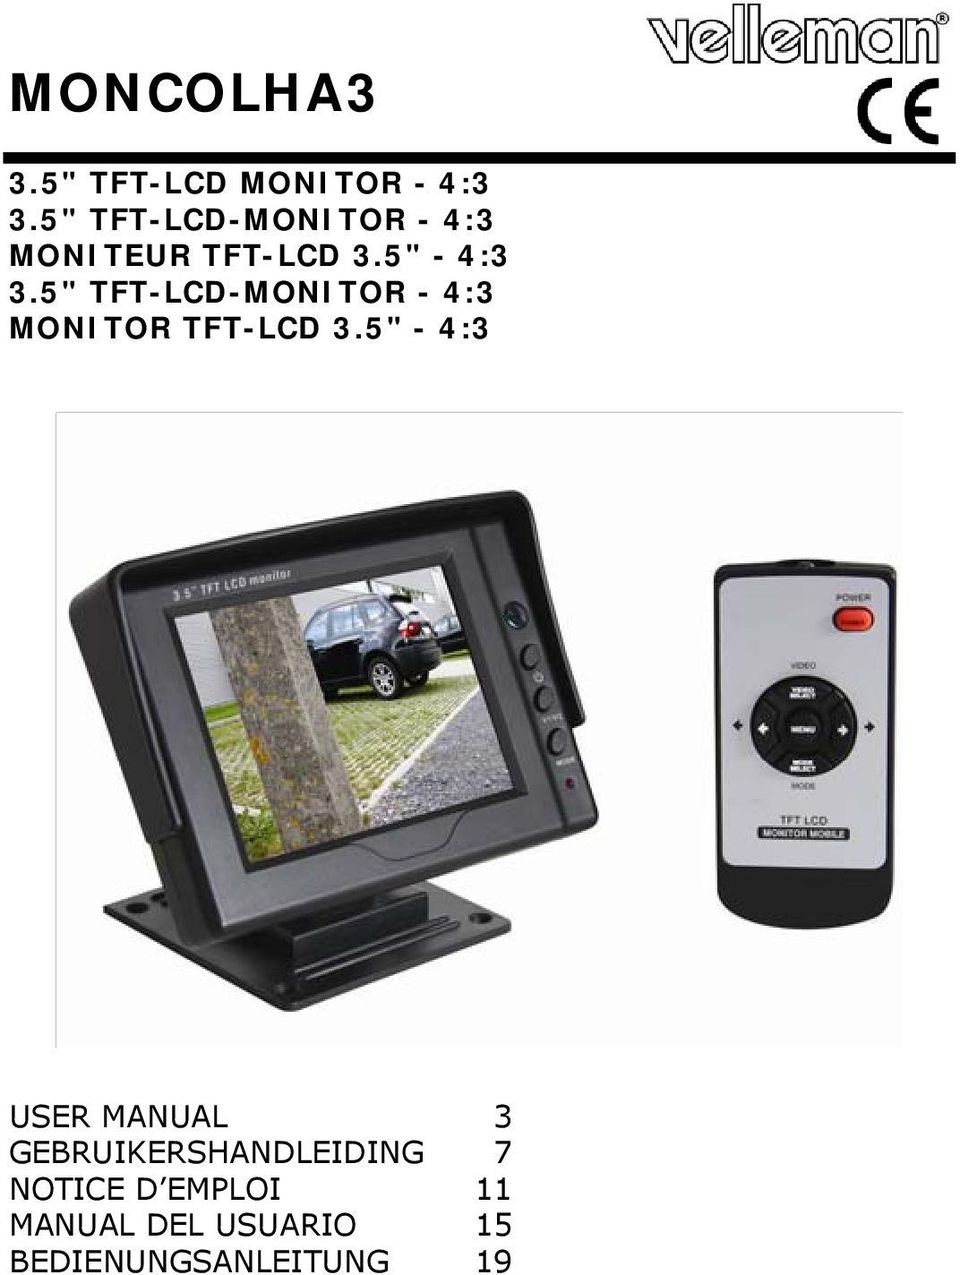 5" TFT-LCD-MONITOR - 4:3 MONITOR TFT-LCD 3.